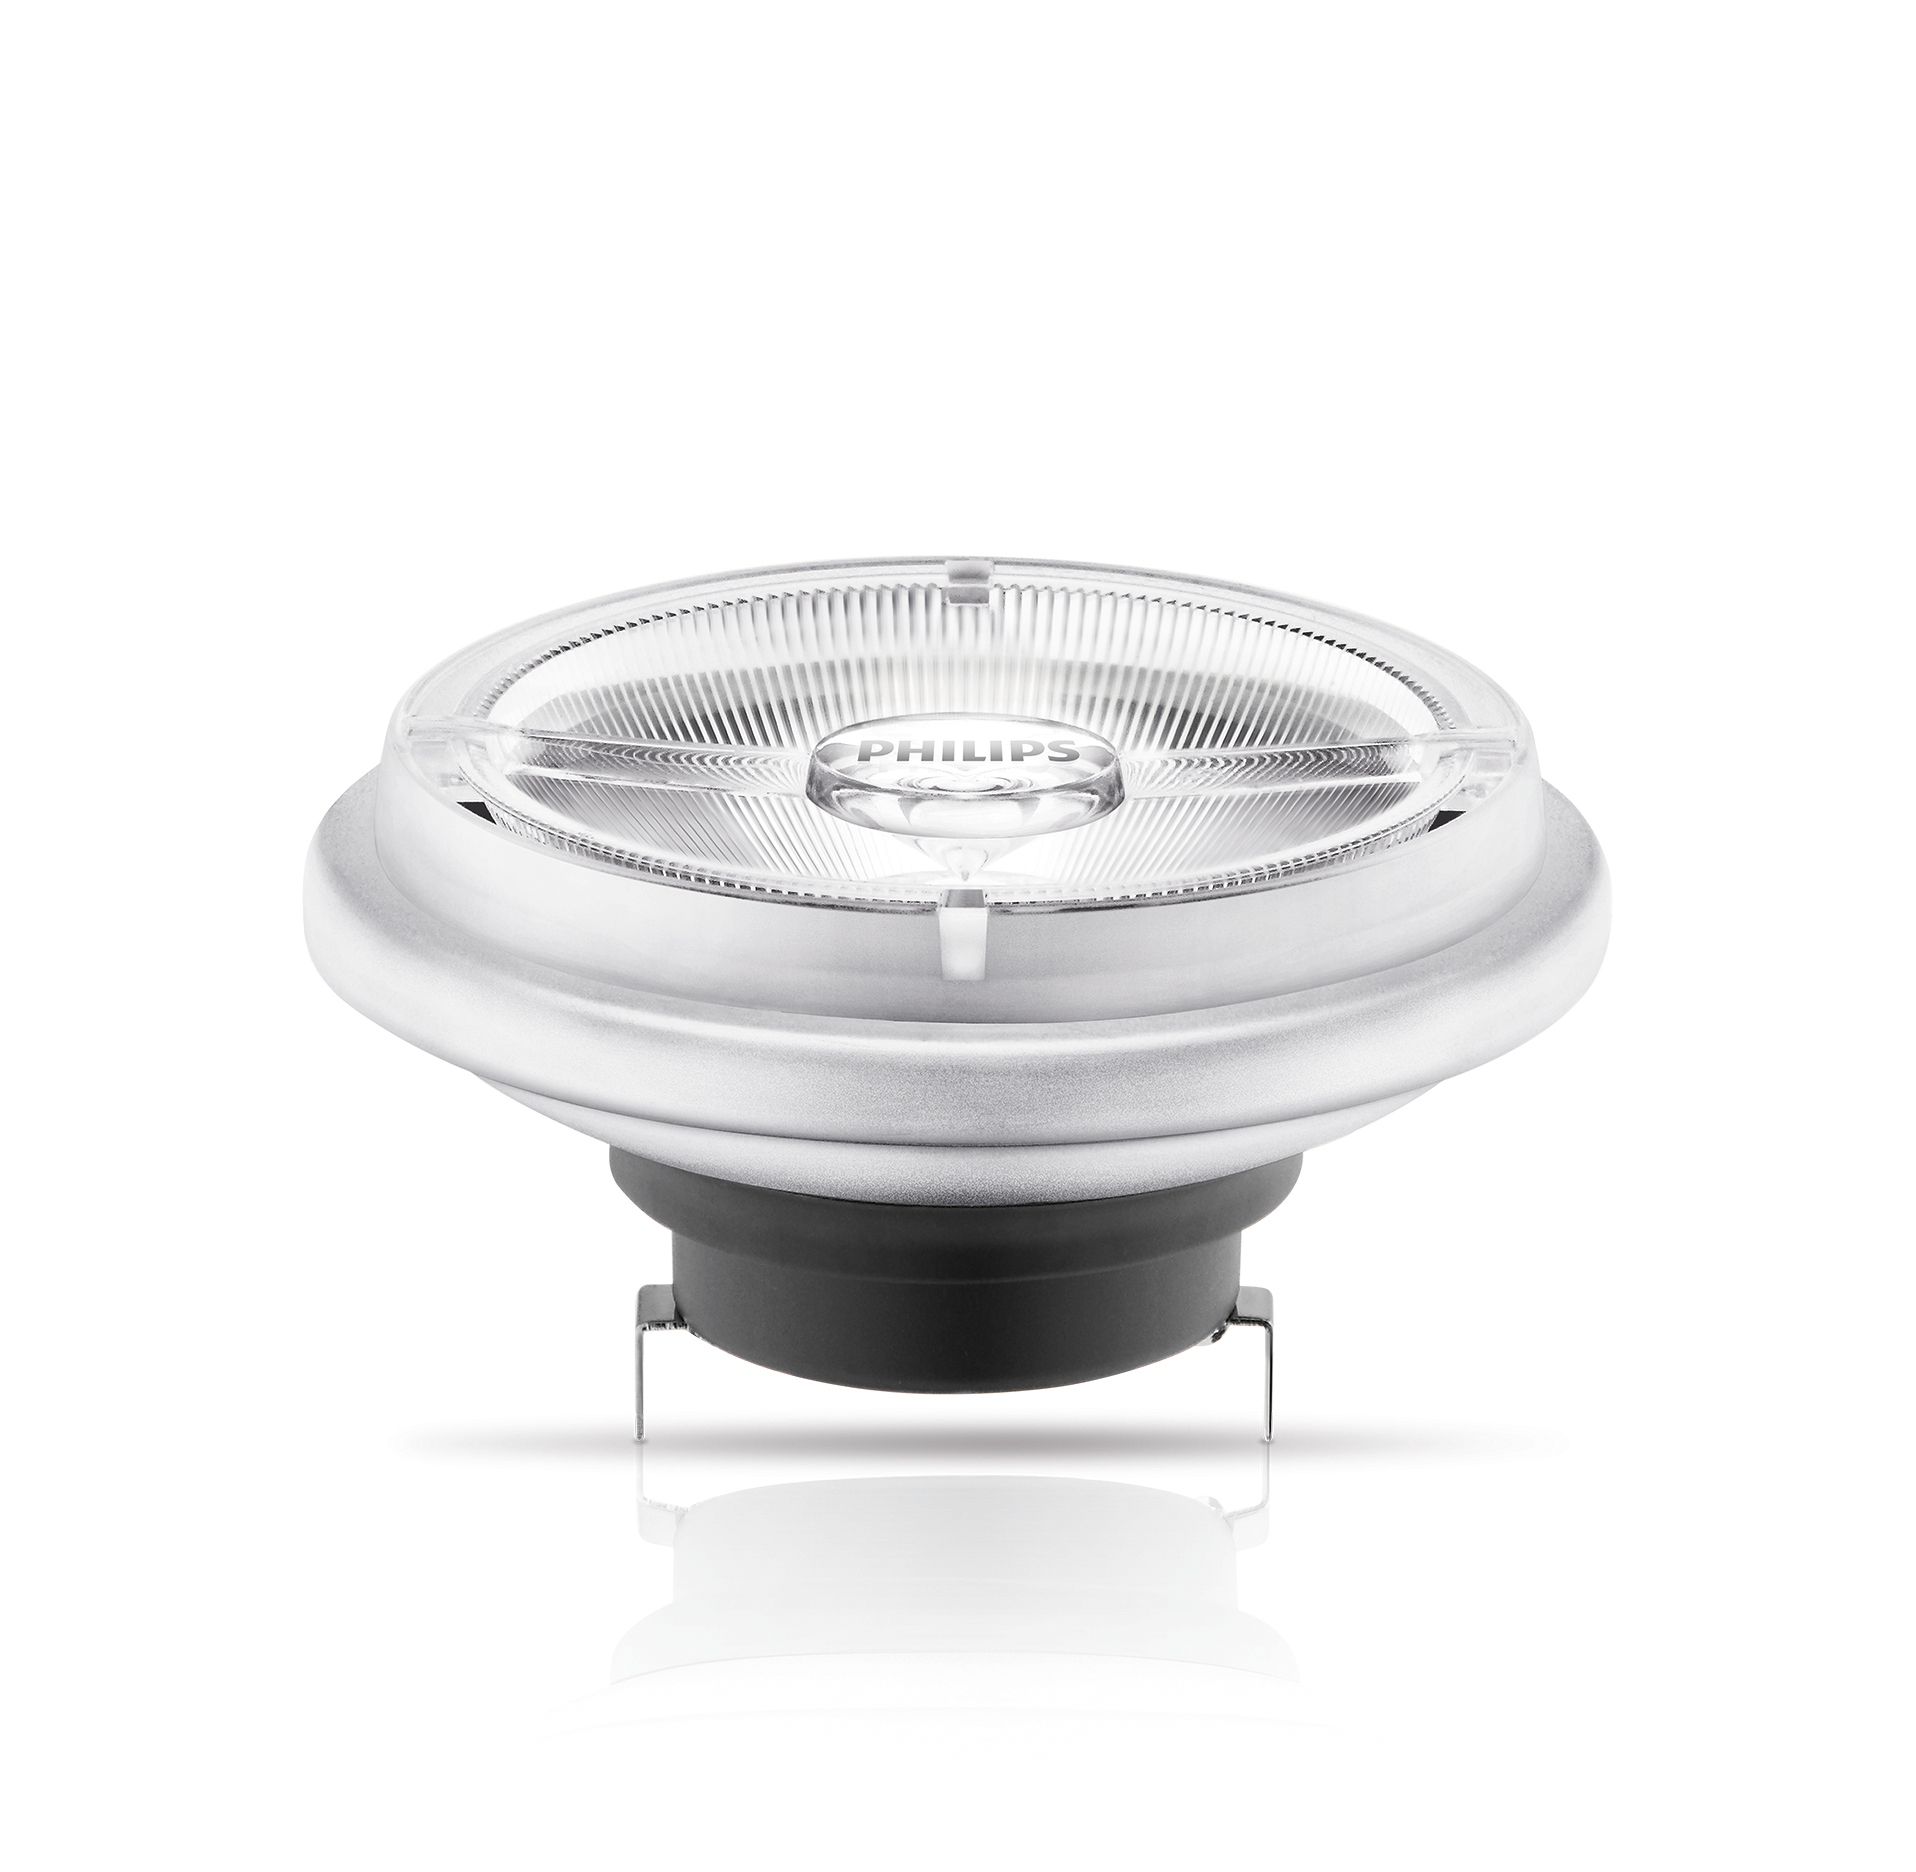 LEDspot LV D AR111 20 100W 12V Dimmable LED Lamp Lampe Master 827 24D dimm,  Philips